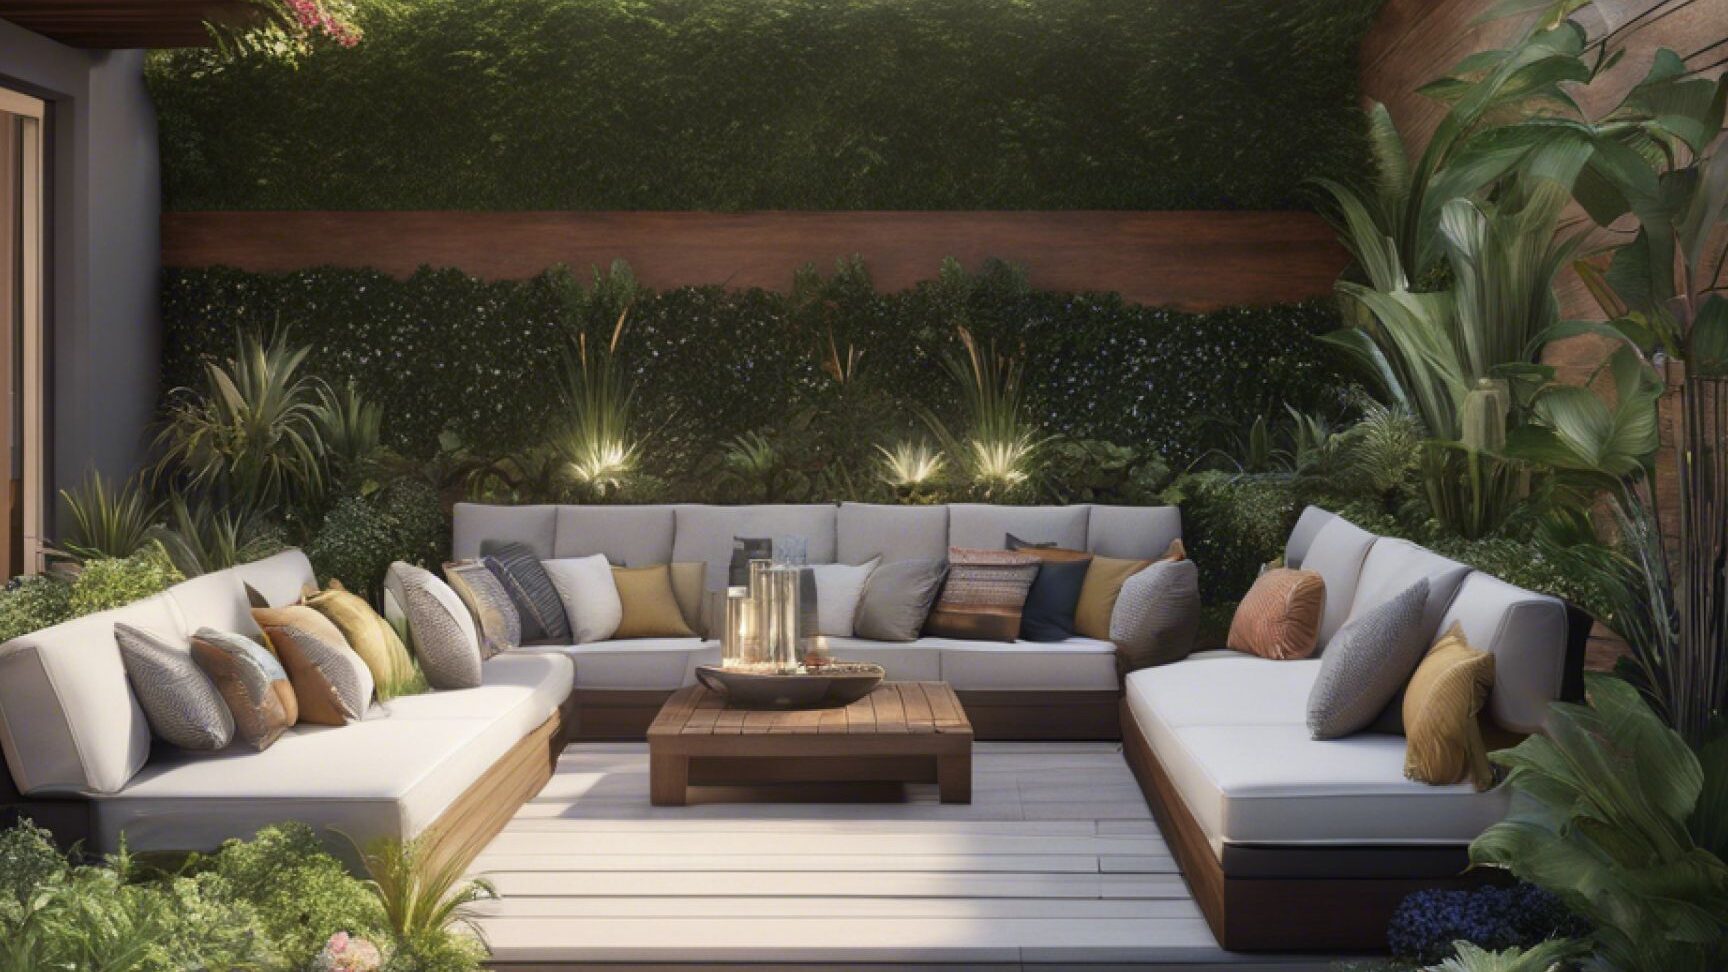 Comment intégrer le style zen dans la décoration de votre terrasse ?